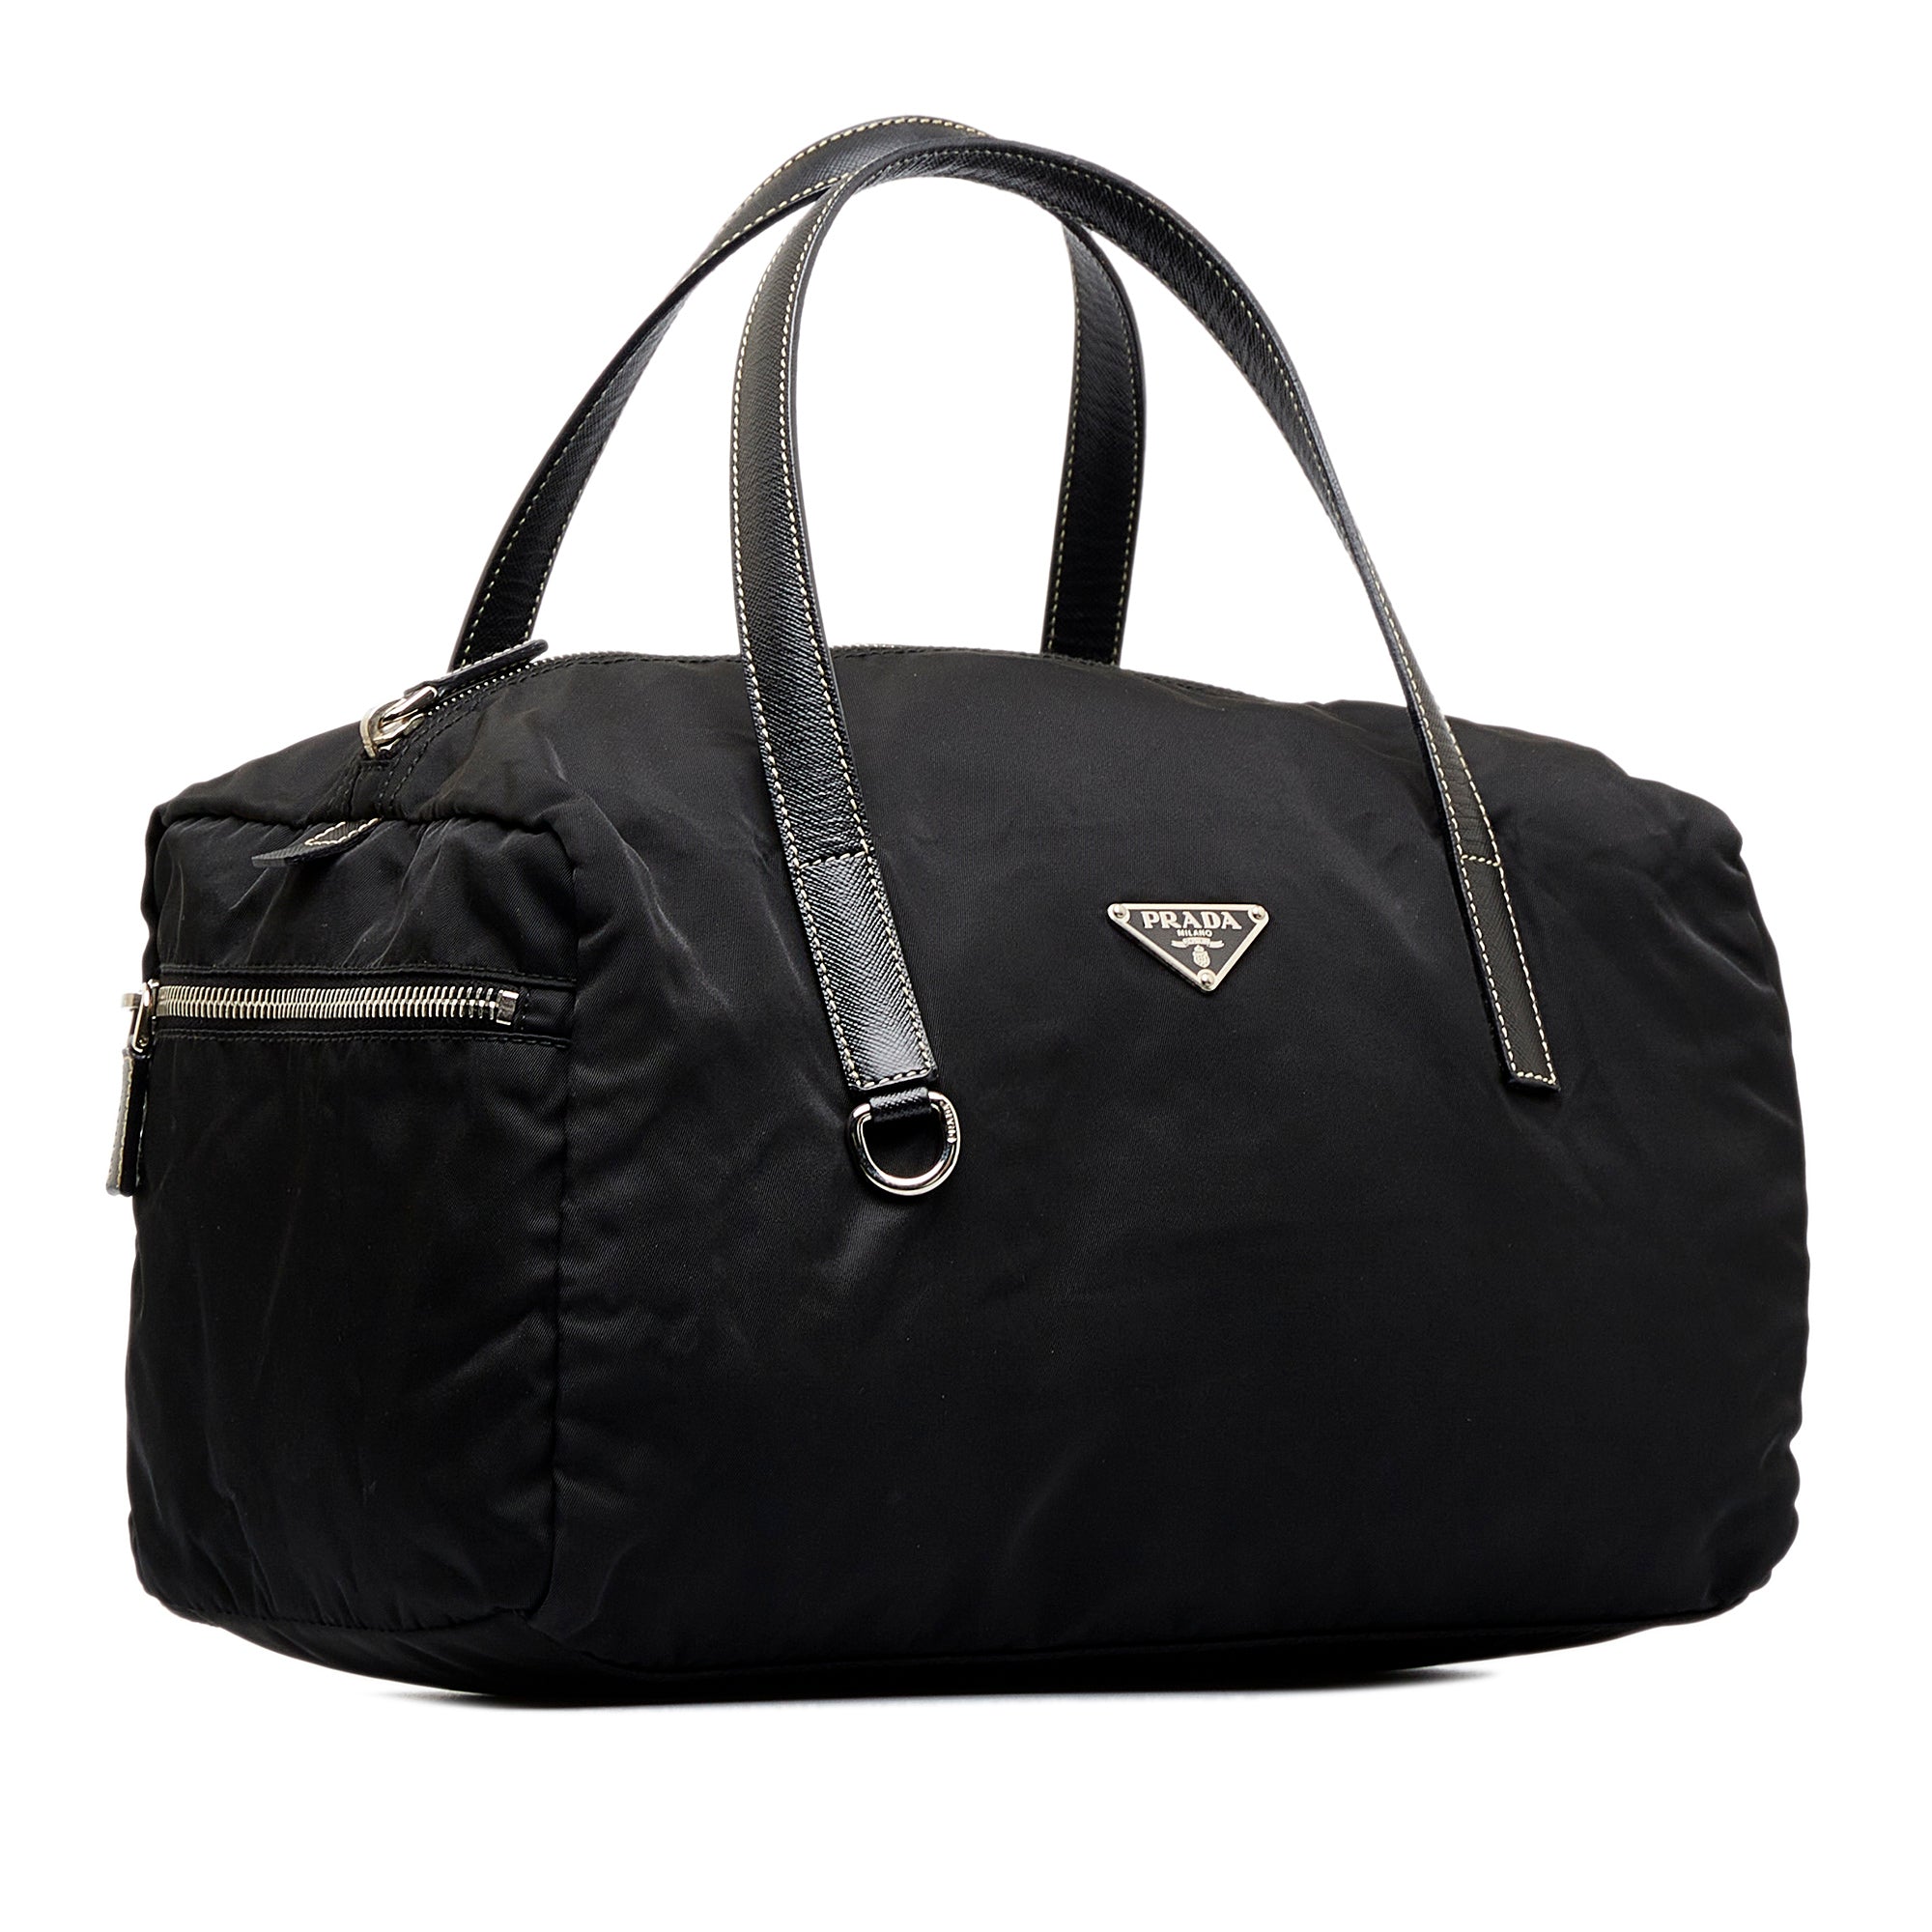 Prada Authenticated Tessuto Handbag